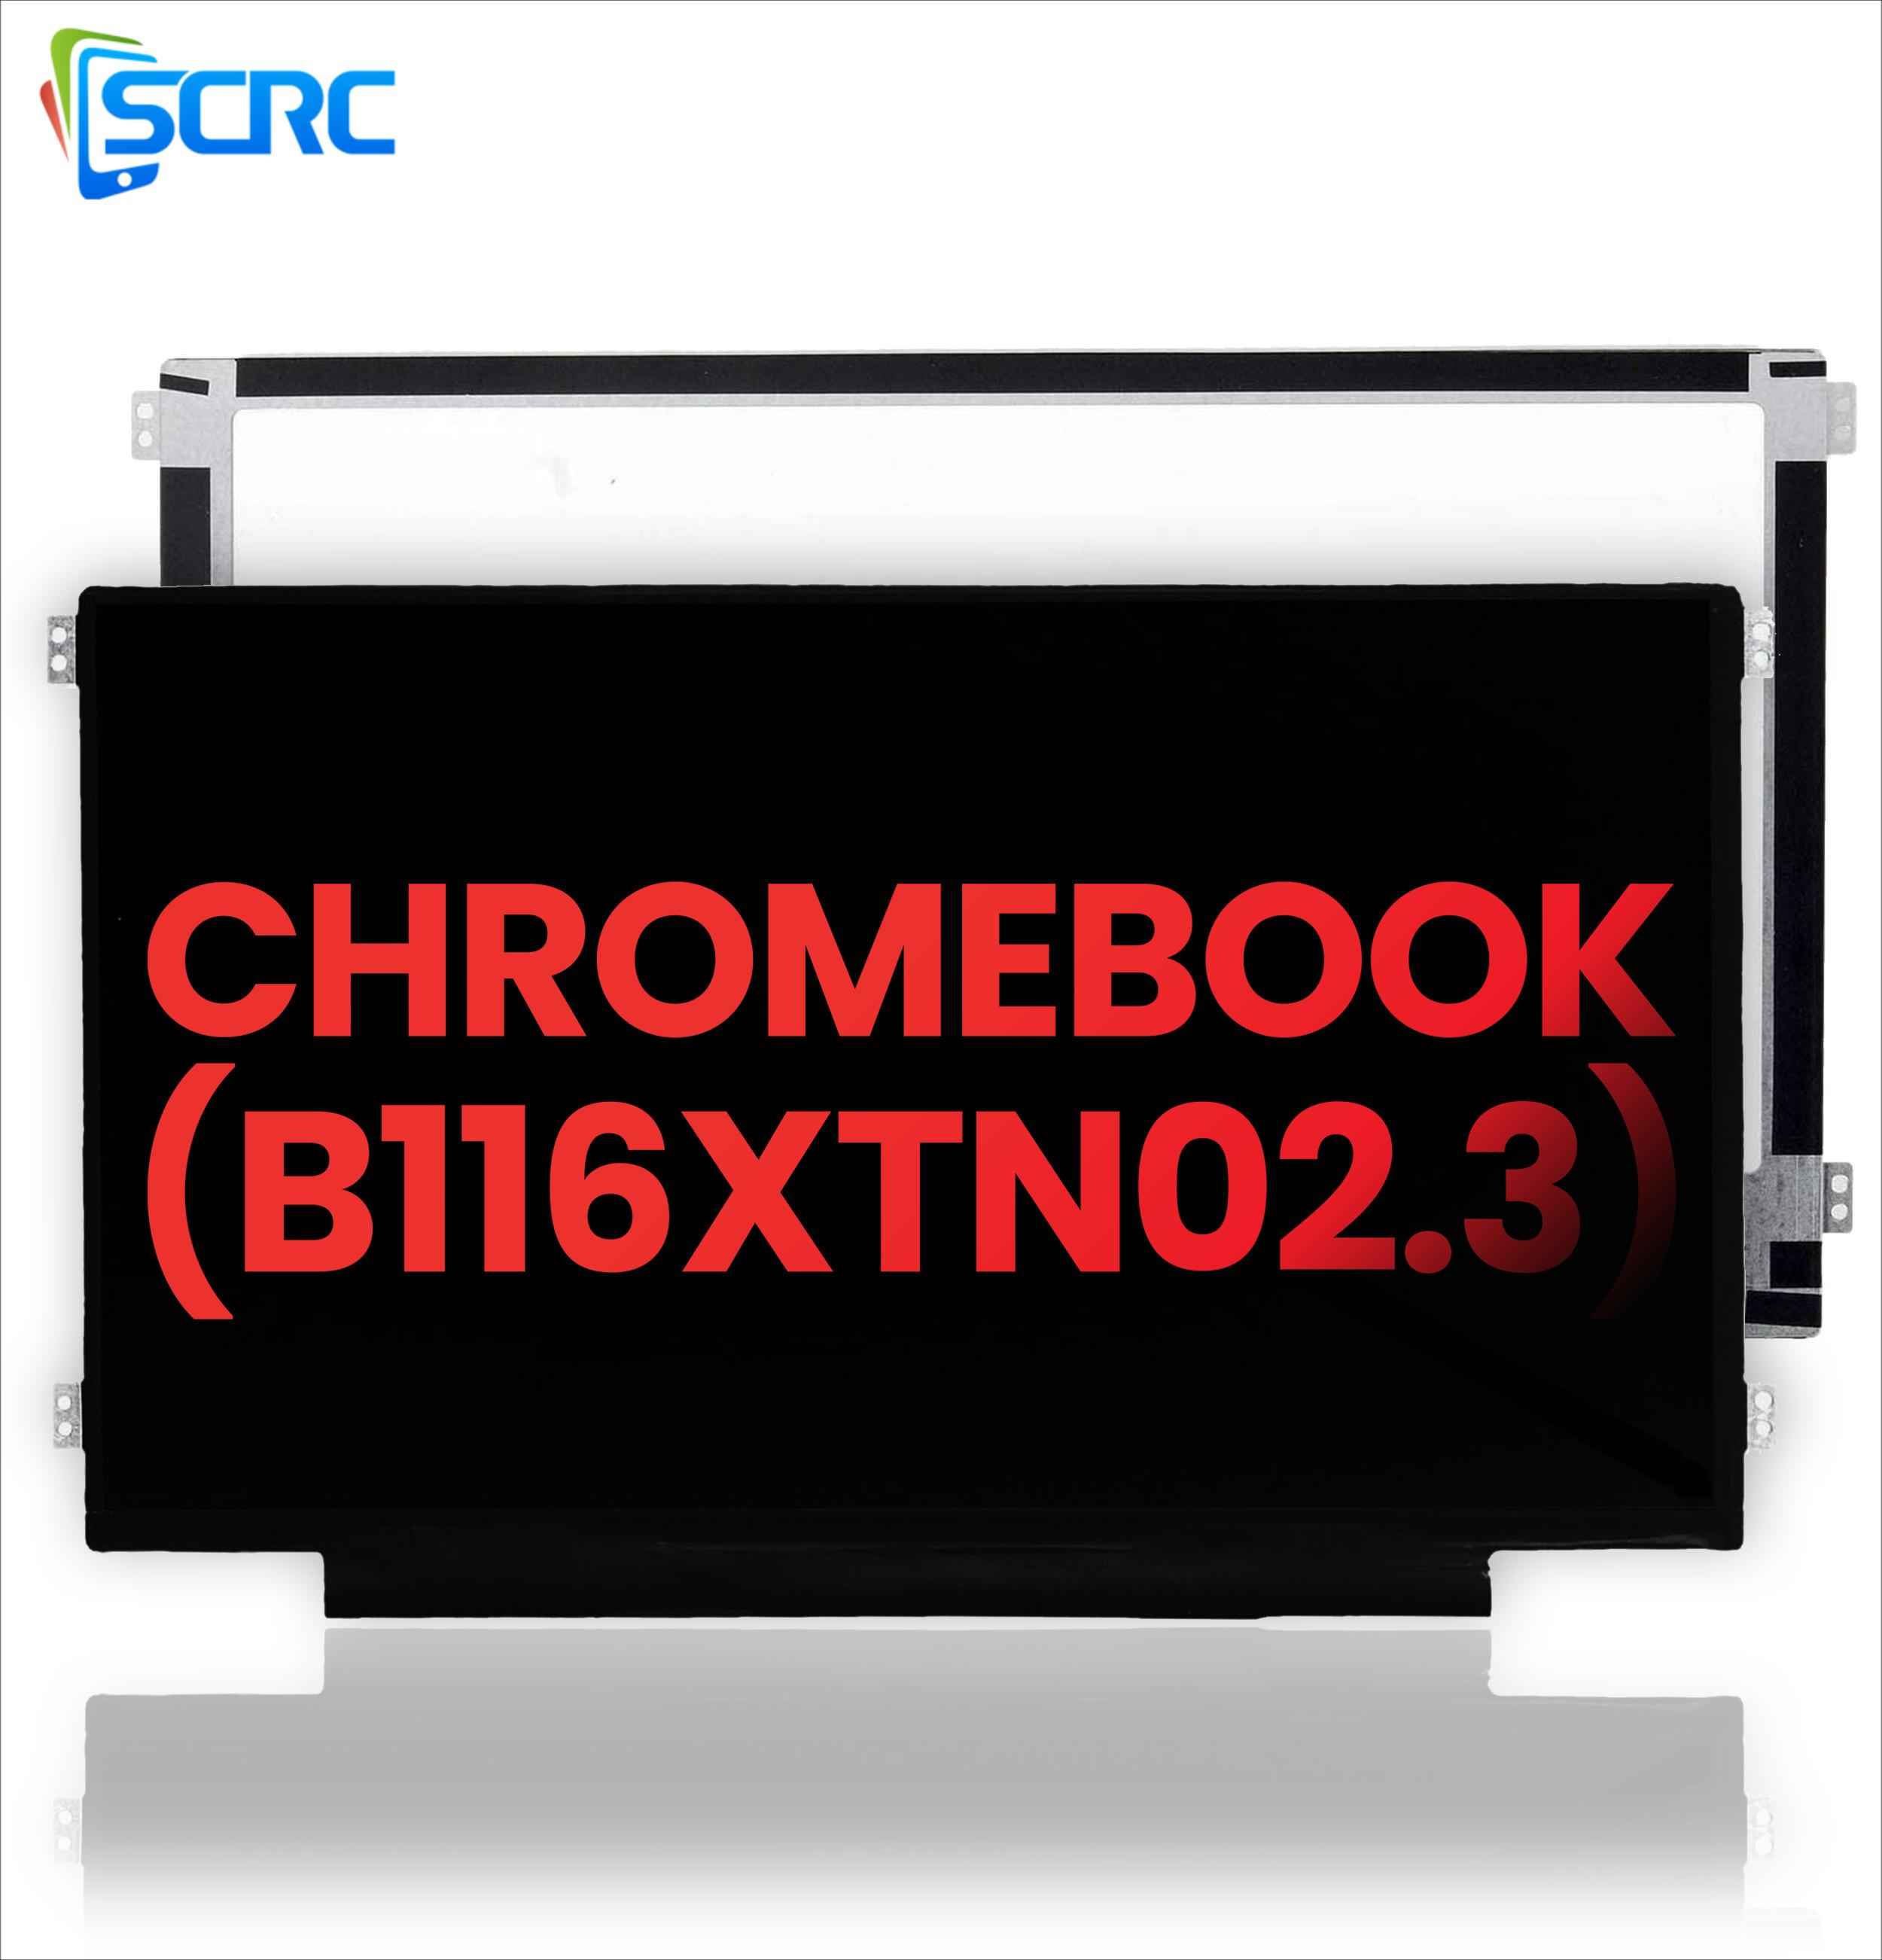 DELL Chromebook B116XTN02.3 को लागि LCD स्क्रिन प्रतिस्थापन